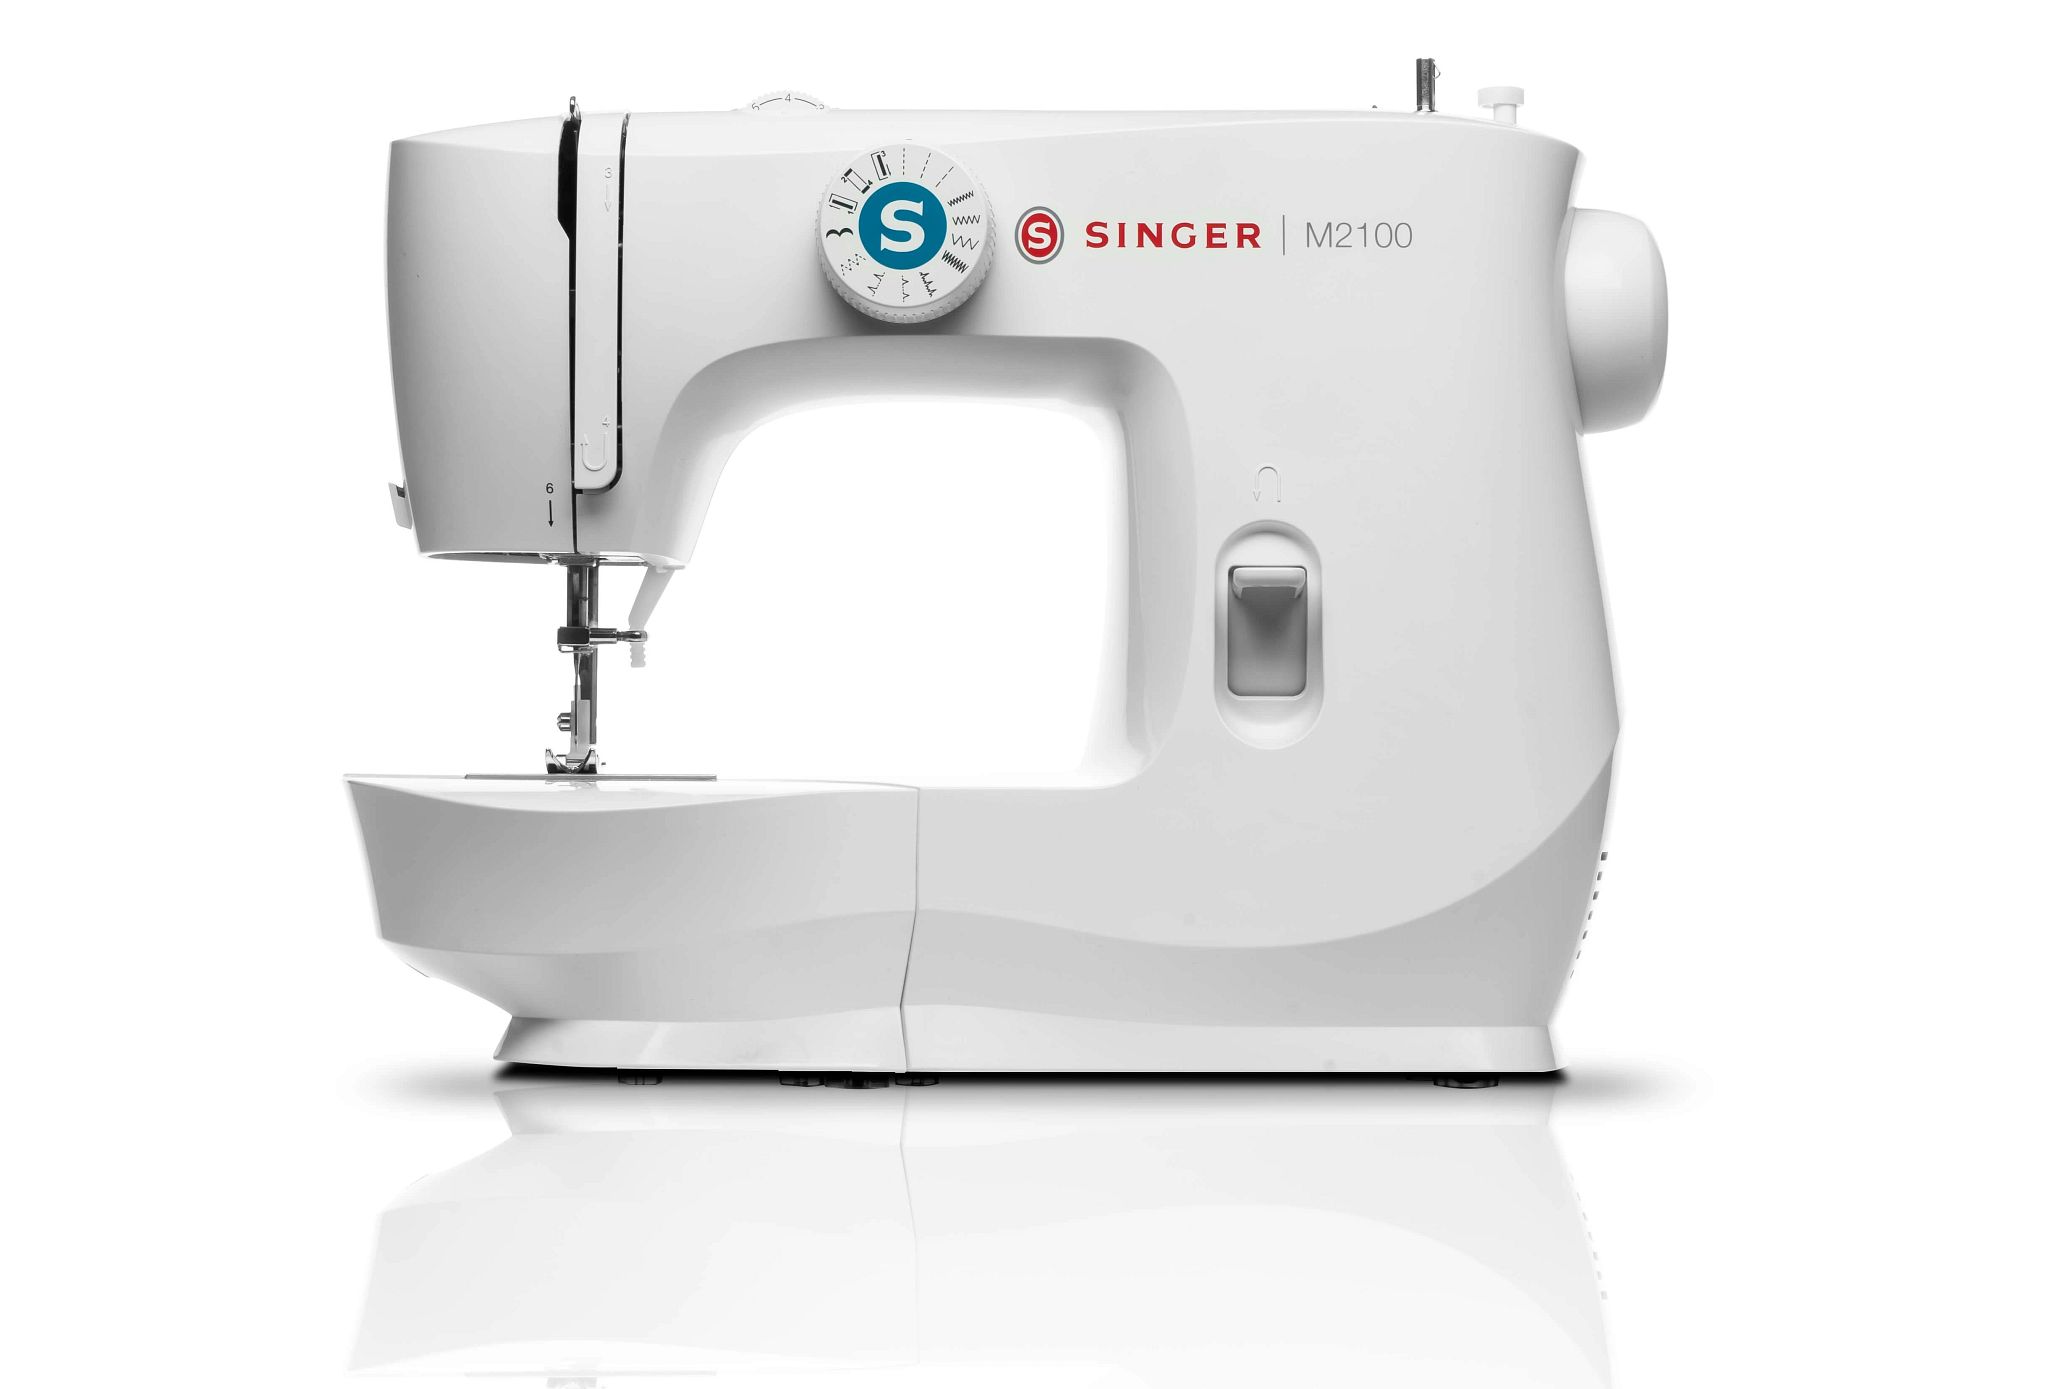 M2100 singer sewing machine